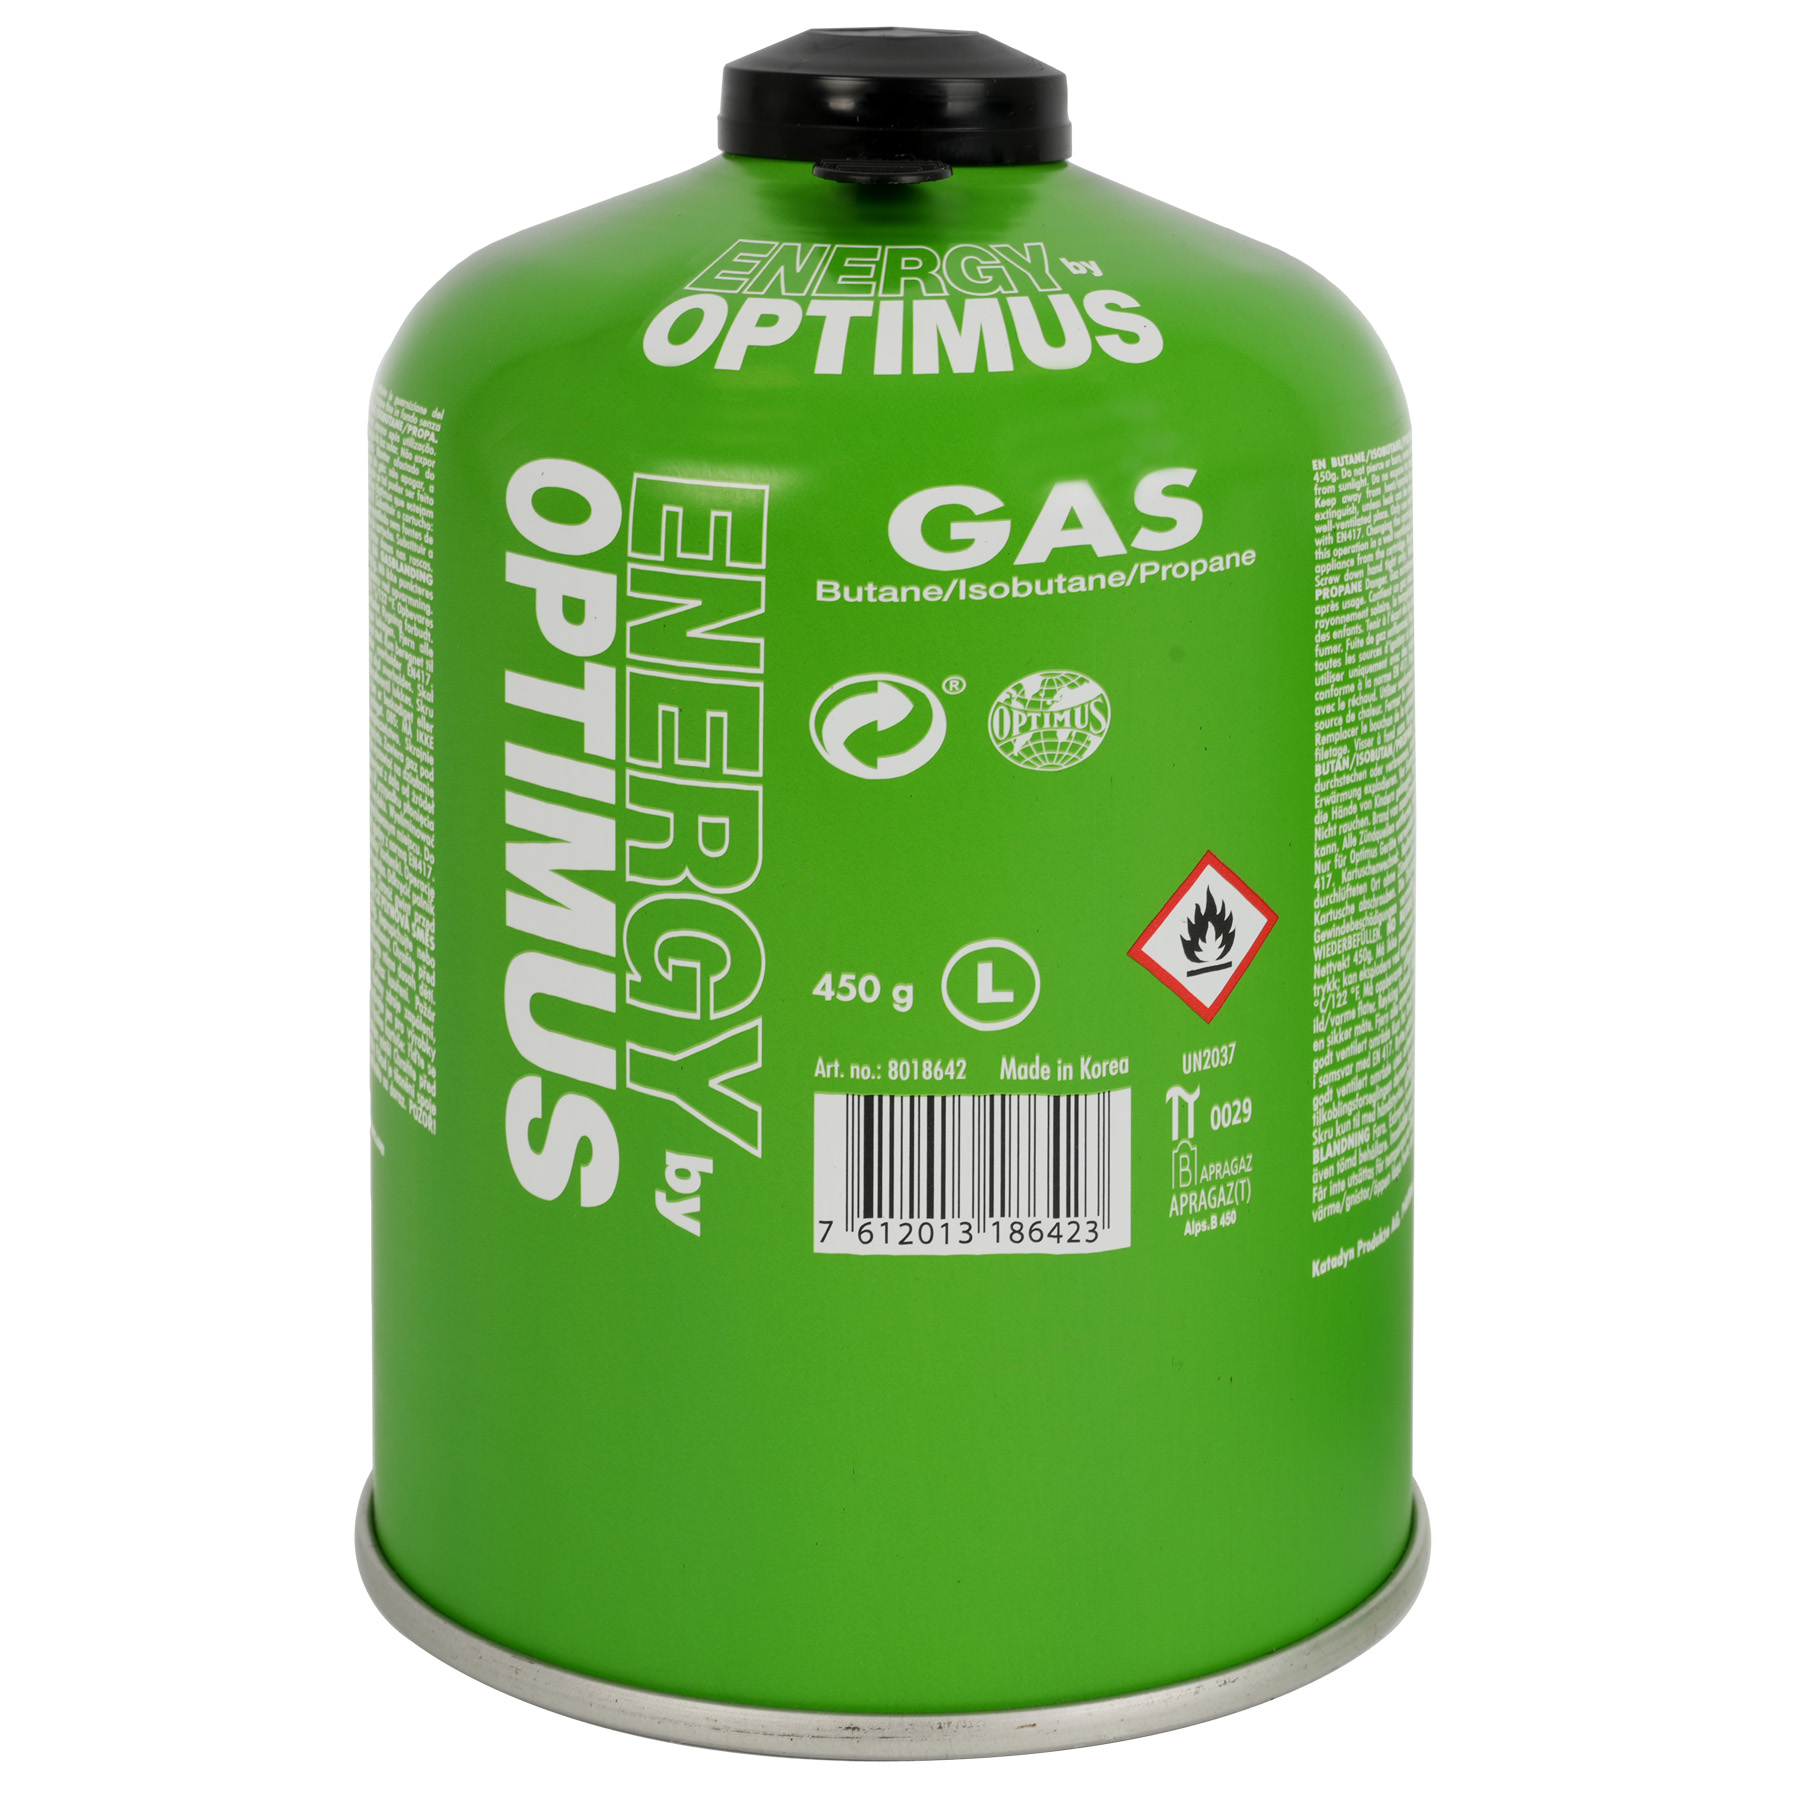 Immagine prodotto da Optimus Cartuccia Gas - Universal - 450g